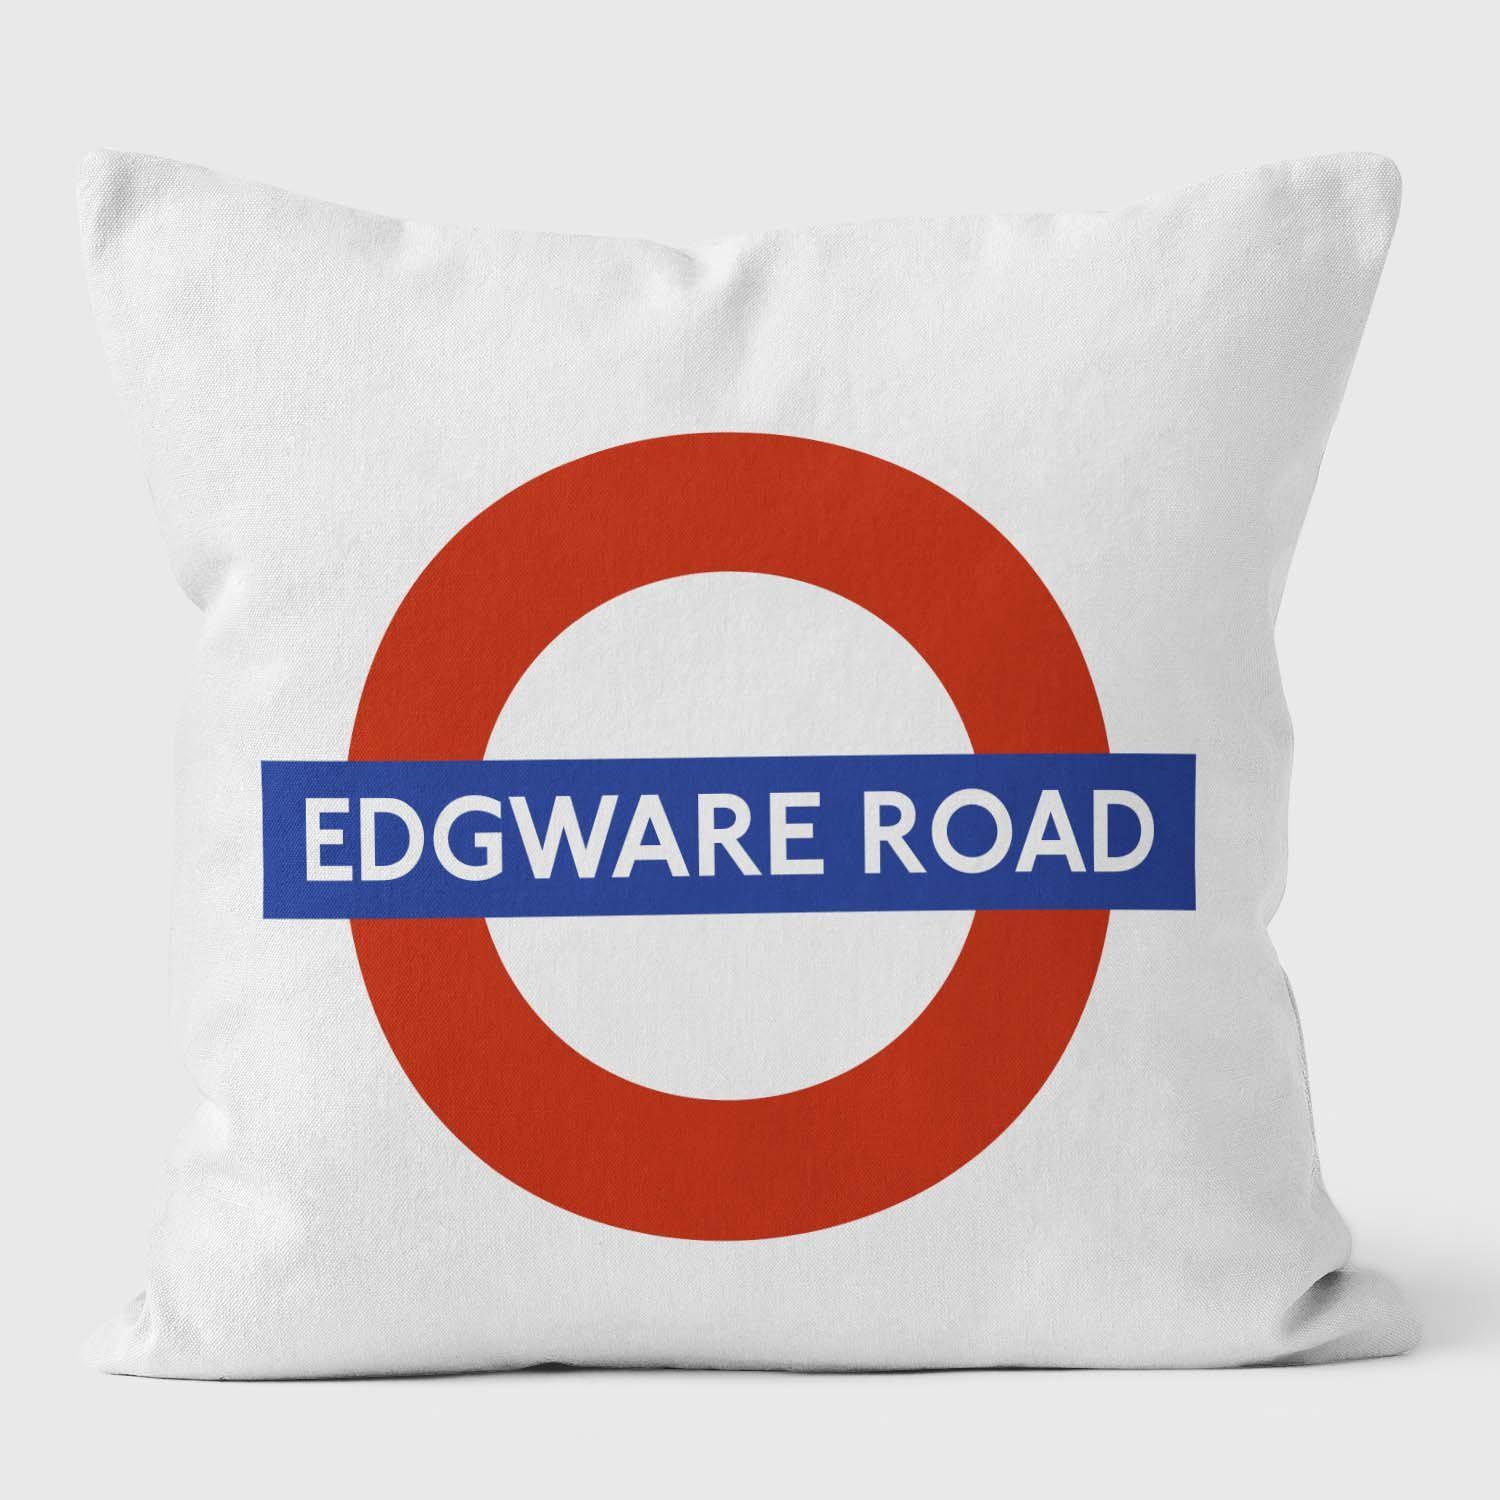 Edgware Road London Underground Tube Station Roundel Cushion - Handmade Cushions UK - WeLoveCushions